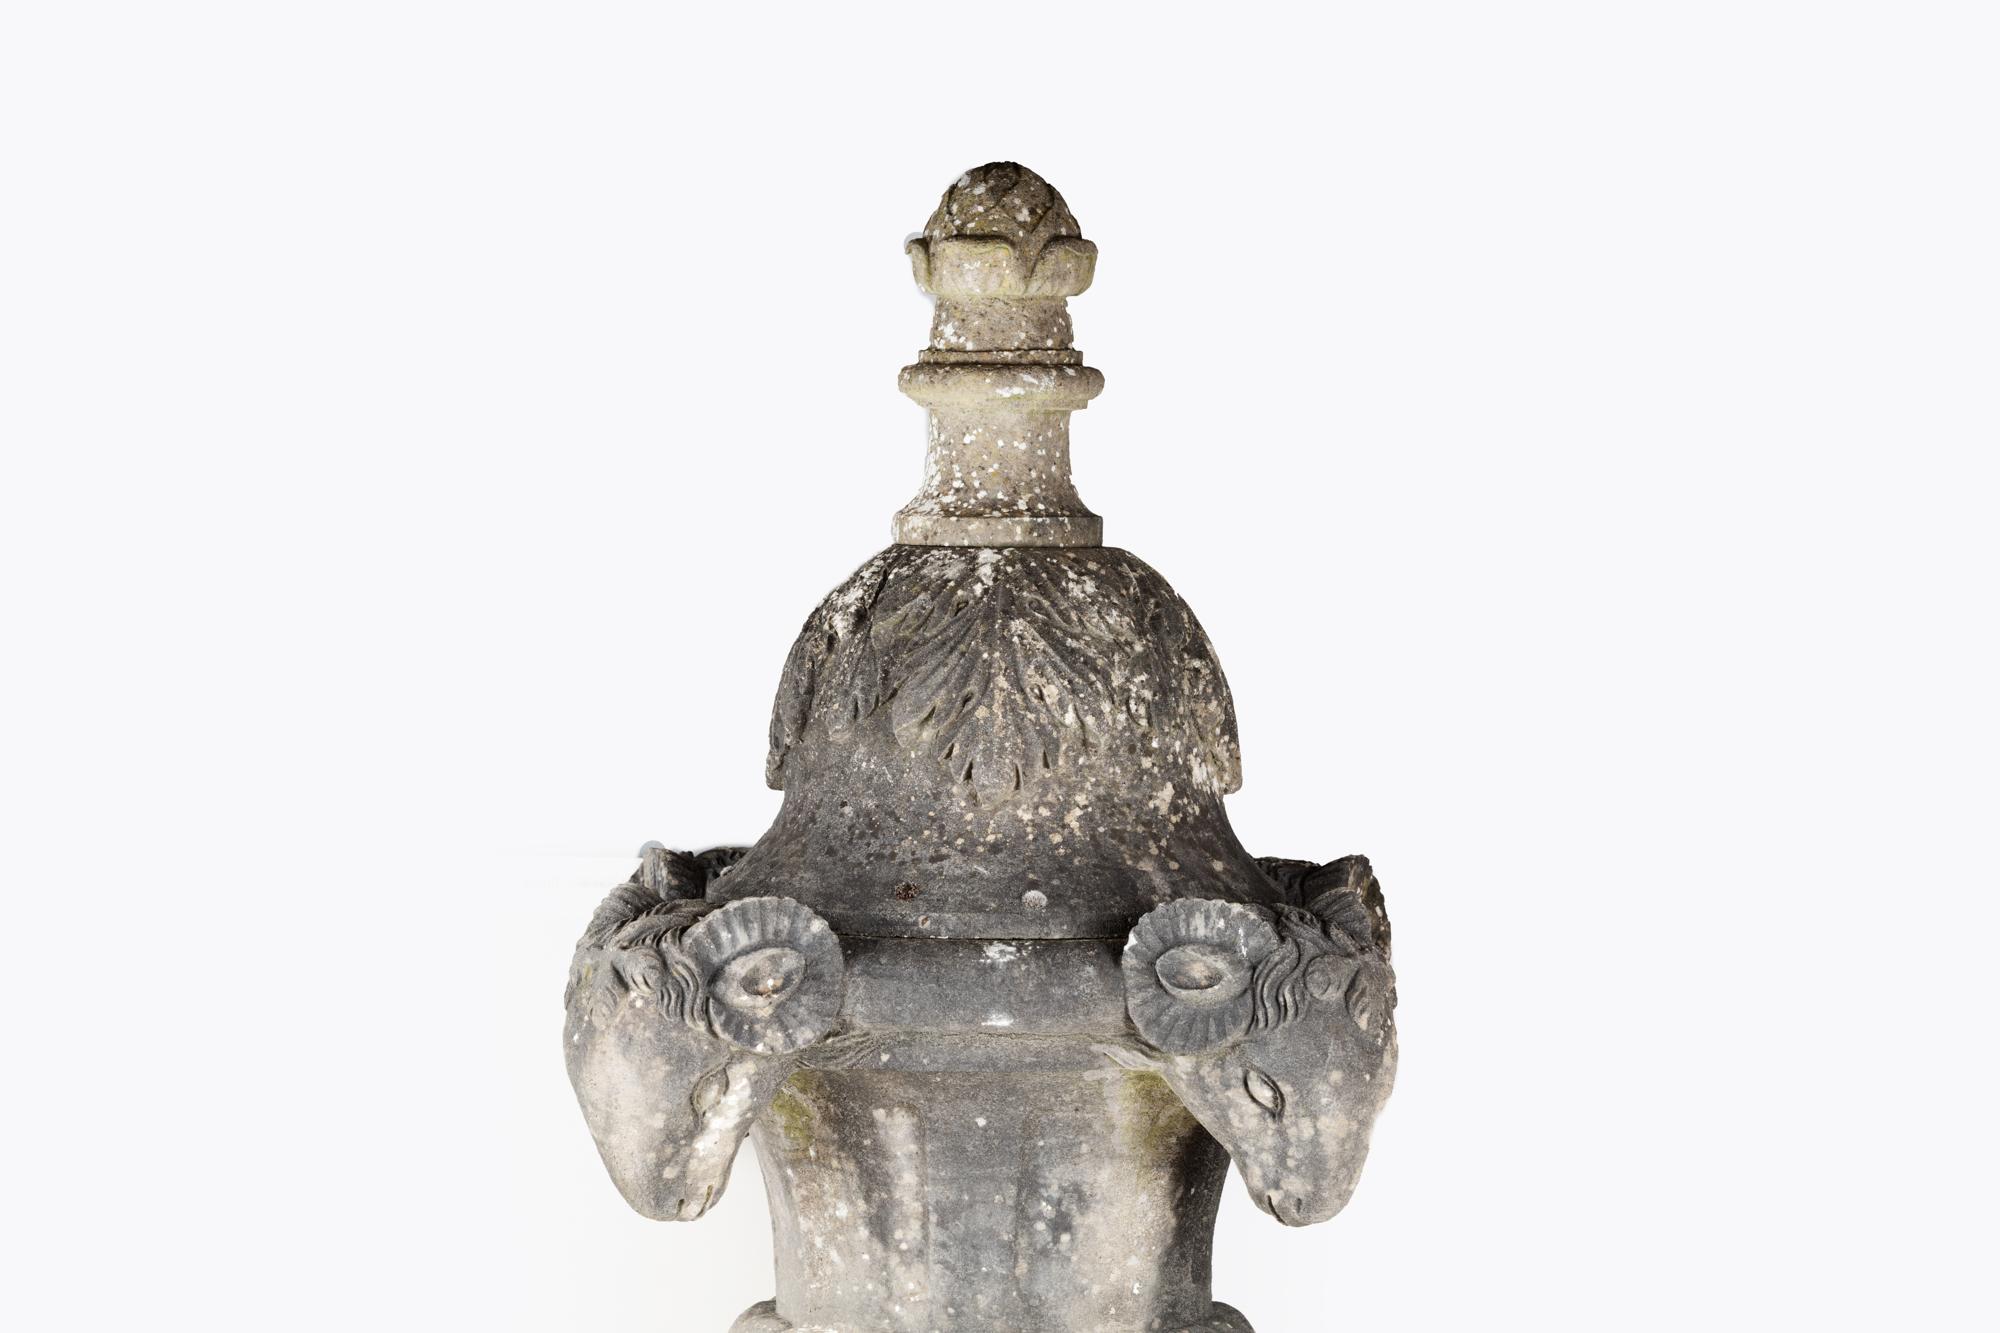 Urne de jardin en calcaire sculpté de la fin du XVIIIe siècle, en forme de campane, avec des têtes de bélier stylisées.
Cette pièce présente un décor classique raffiné avec des motifs de feuilles d'acanthe appliqués sur le couvercle et flanqués de